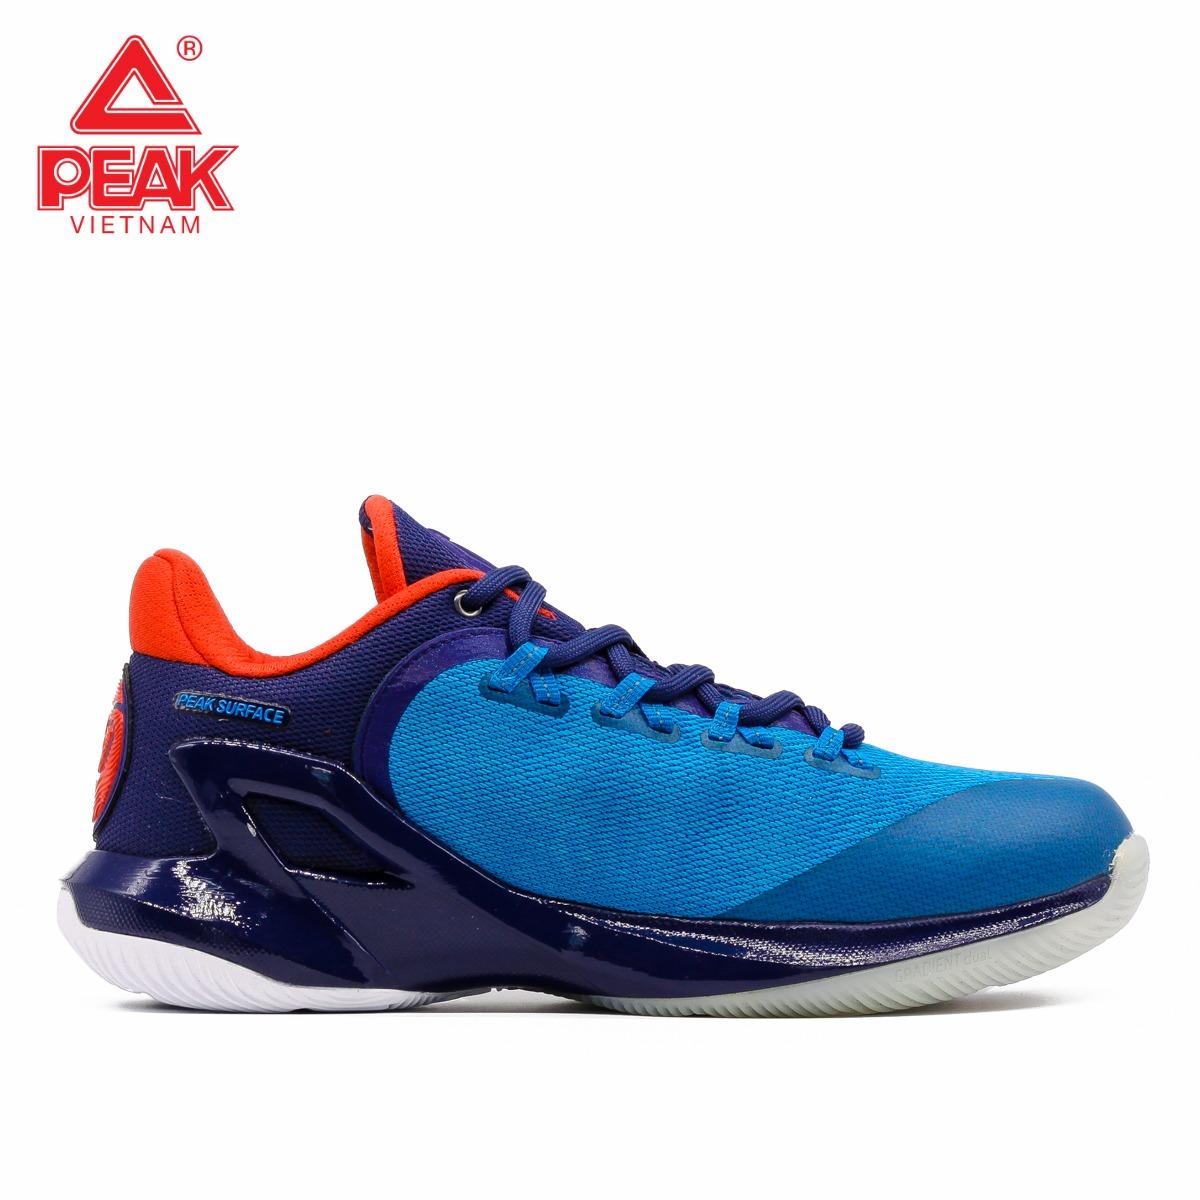 Giày thời trang bóng rổ nam Peak Tony Parker V E73323A – Xanh Đỏ